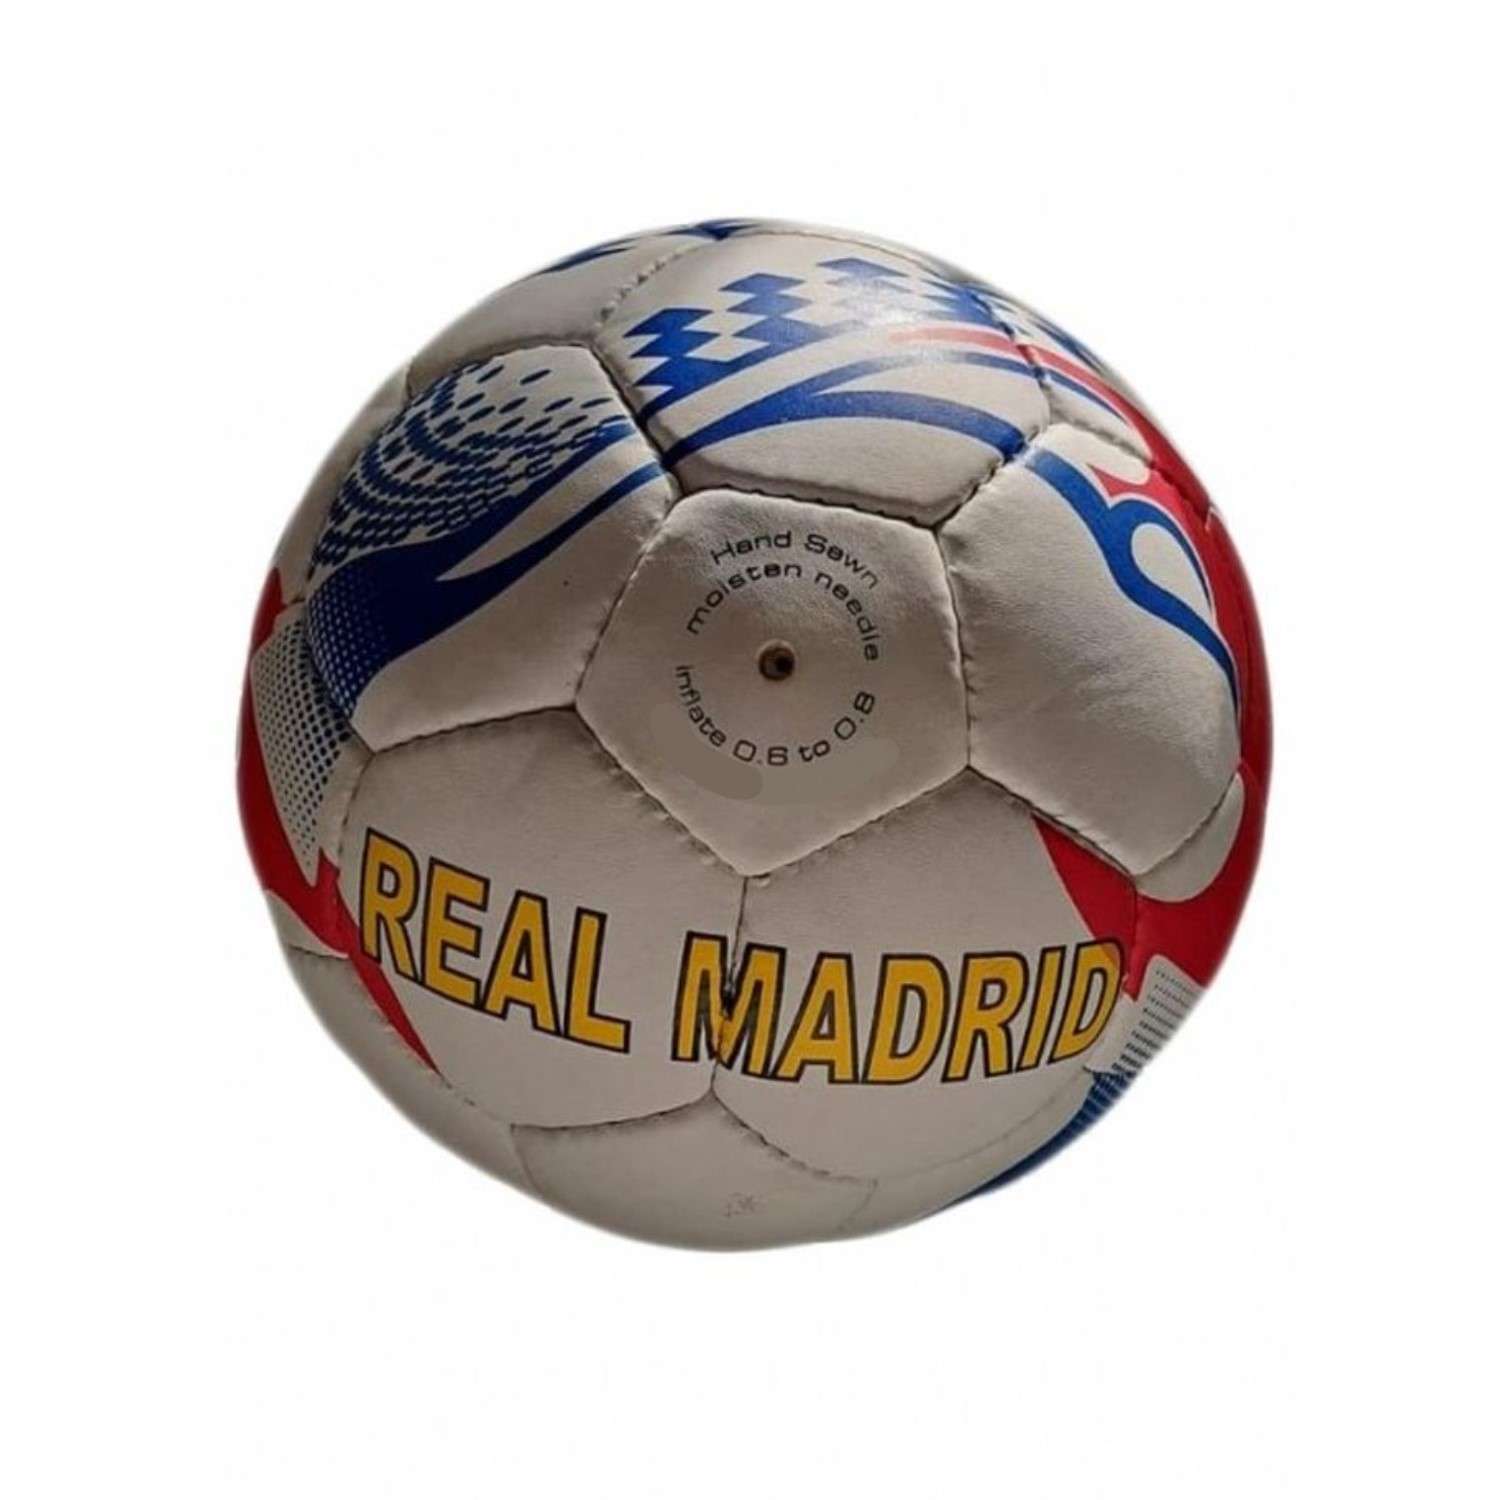 Футбольный мяч Uniglodis с названием клуба Реал Мадрид - фото 1